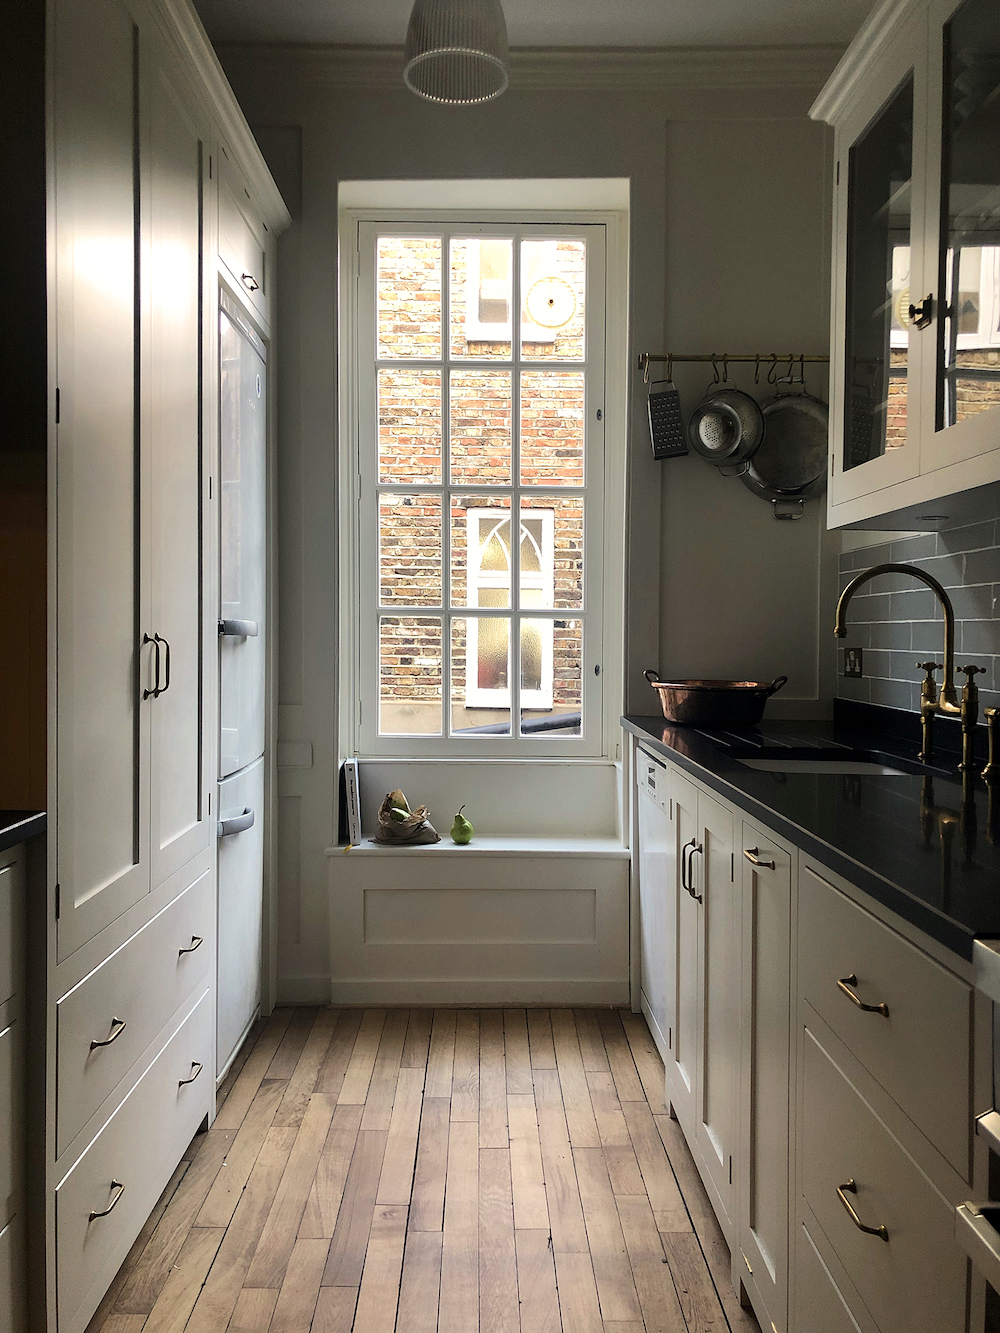 Covent Garden Kitchen - DeVOL Kitchens - Tiny kitchens - Small kitchen